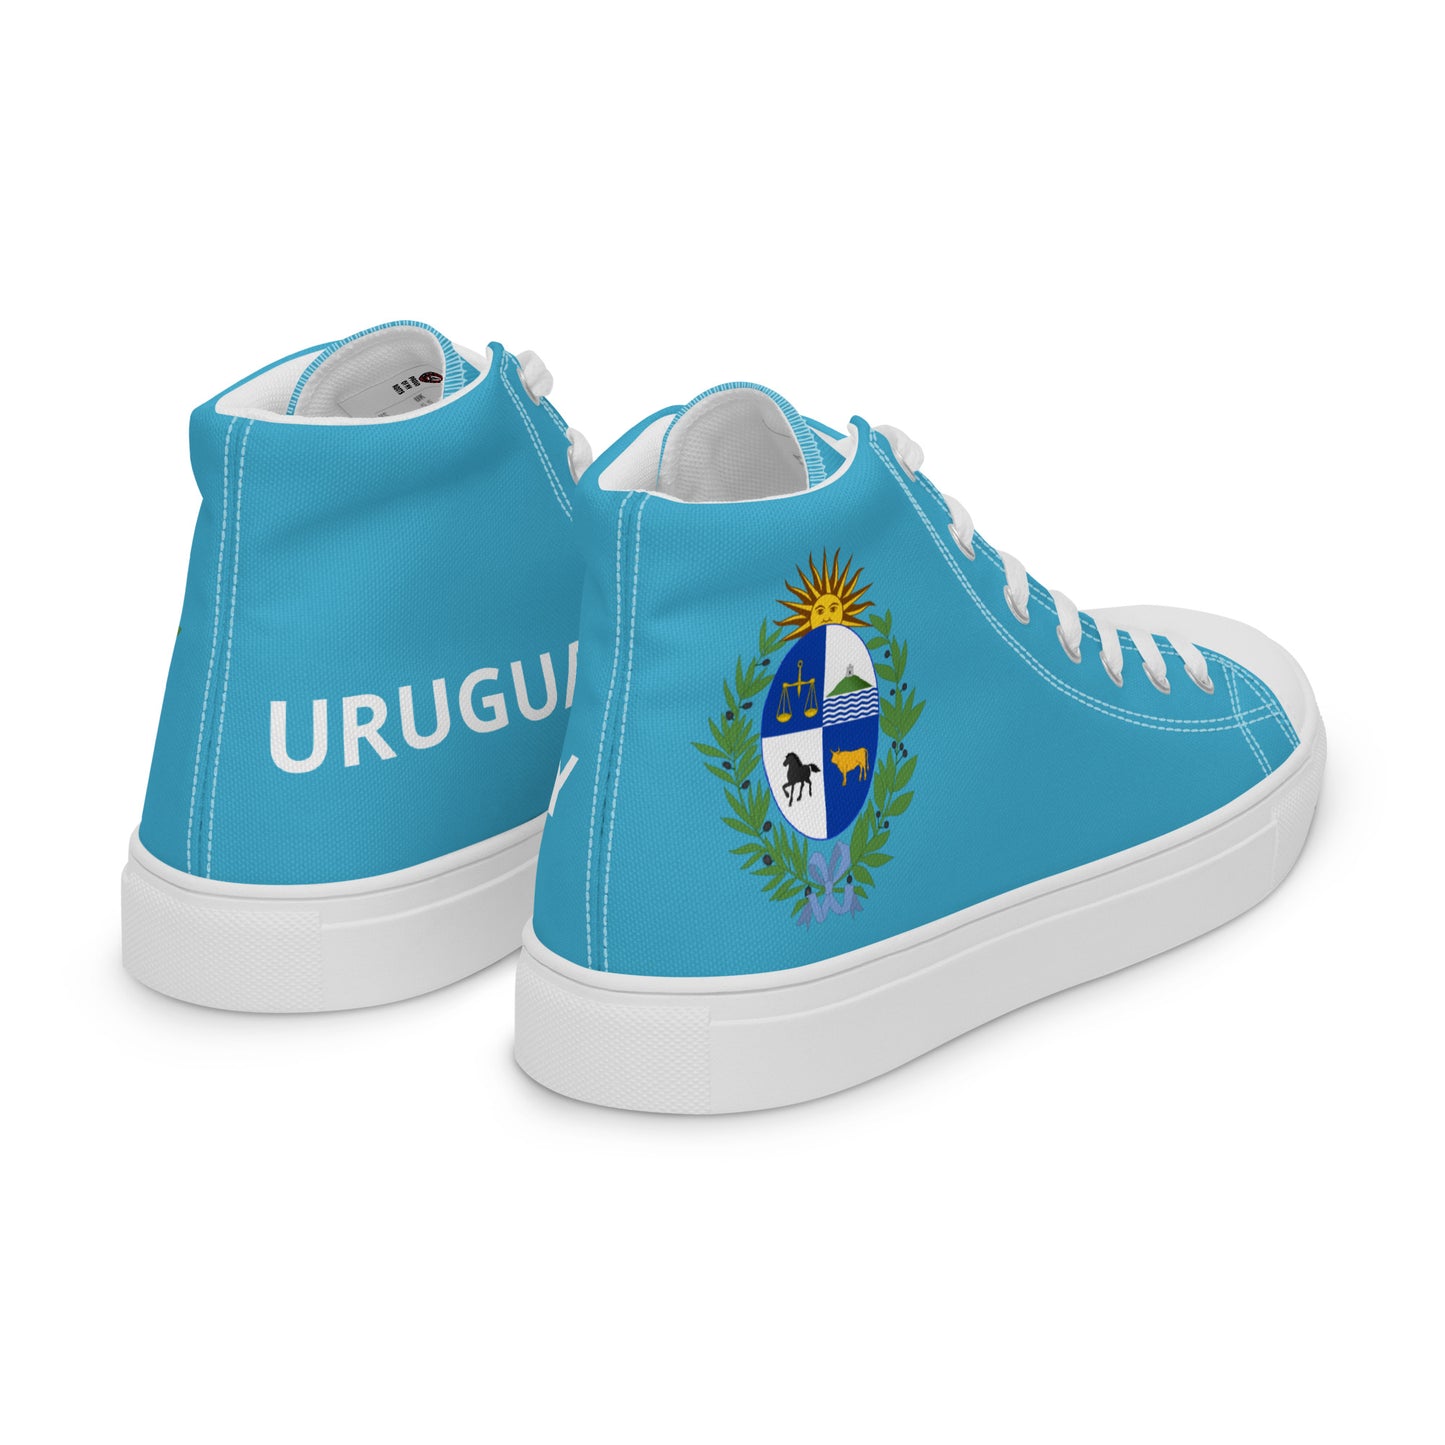 Uruguay - Men - Sky - High top shoes